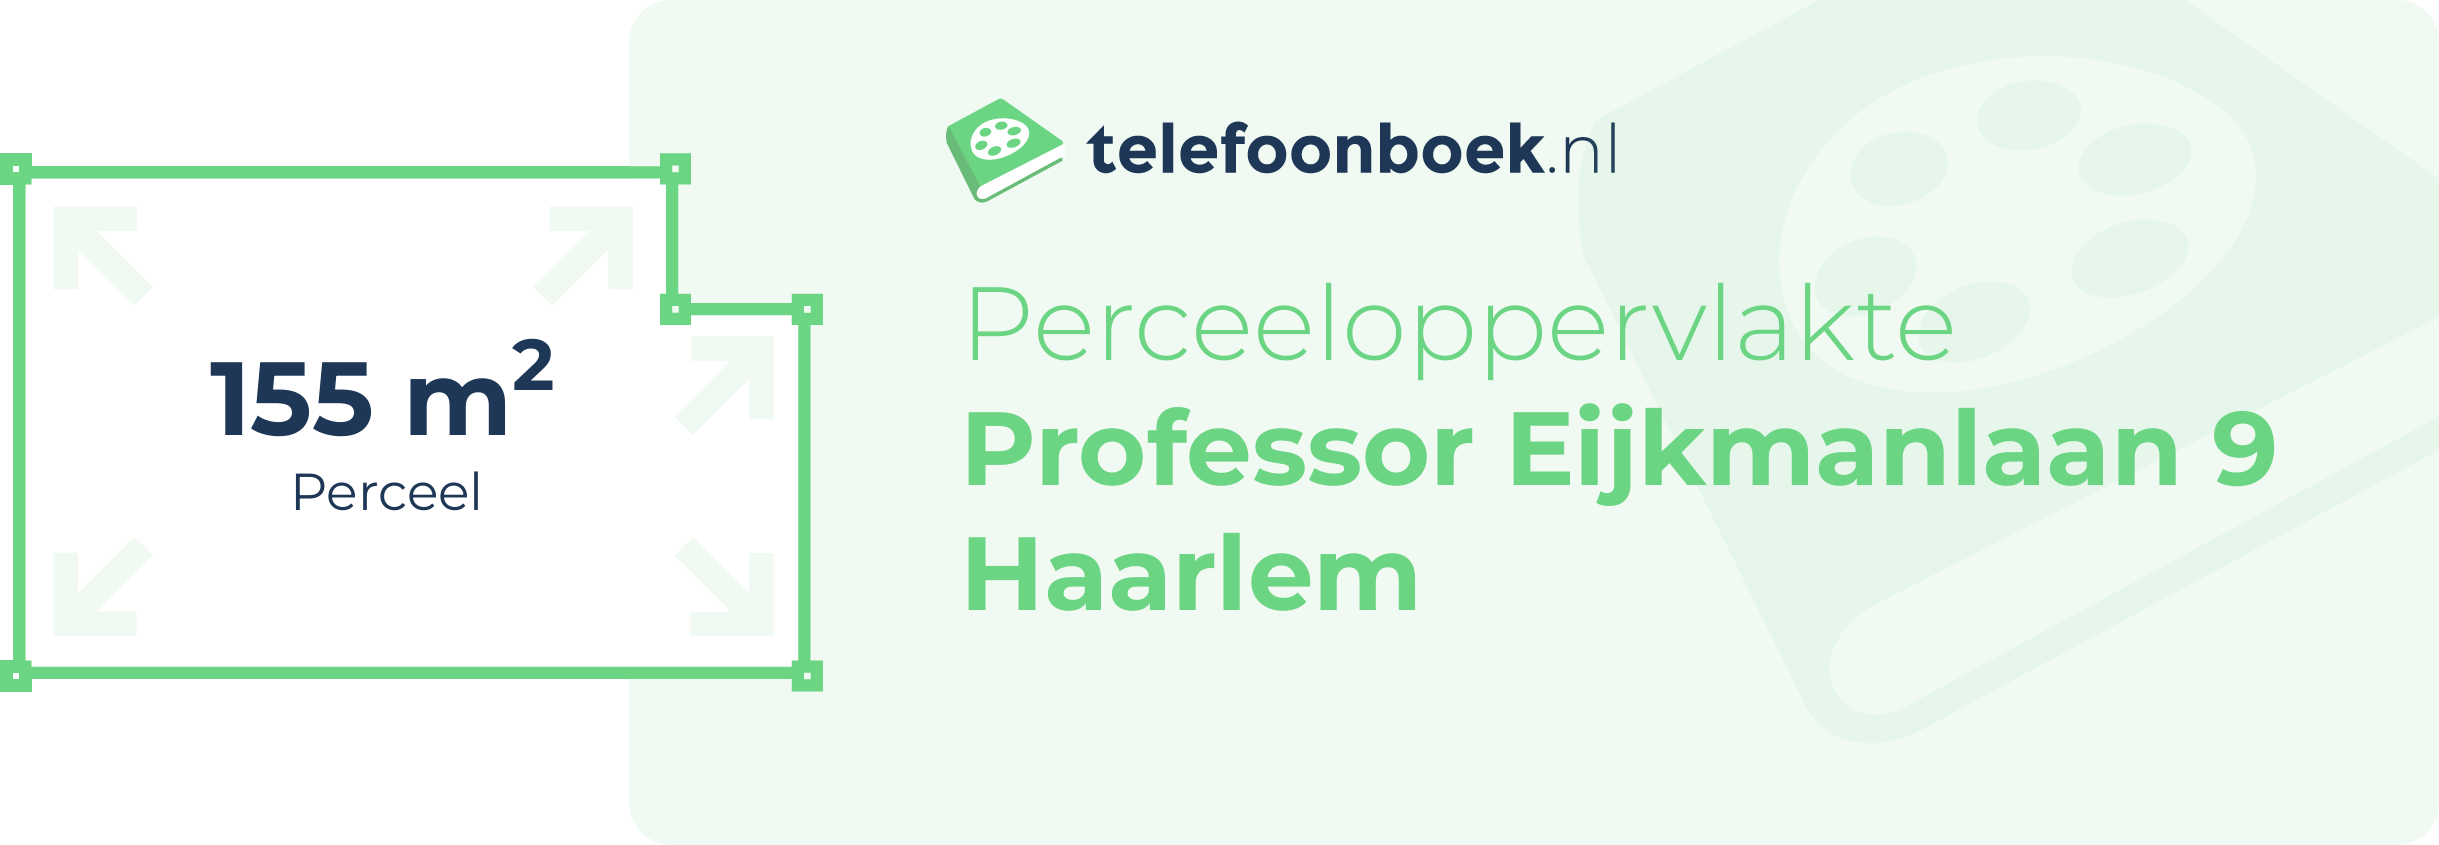 Perceeloppervlakte Professor Eijkmanlaan 9 Haarlem